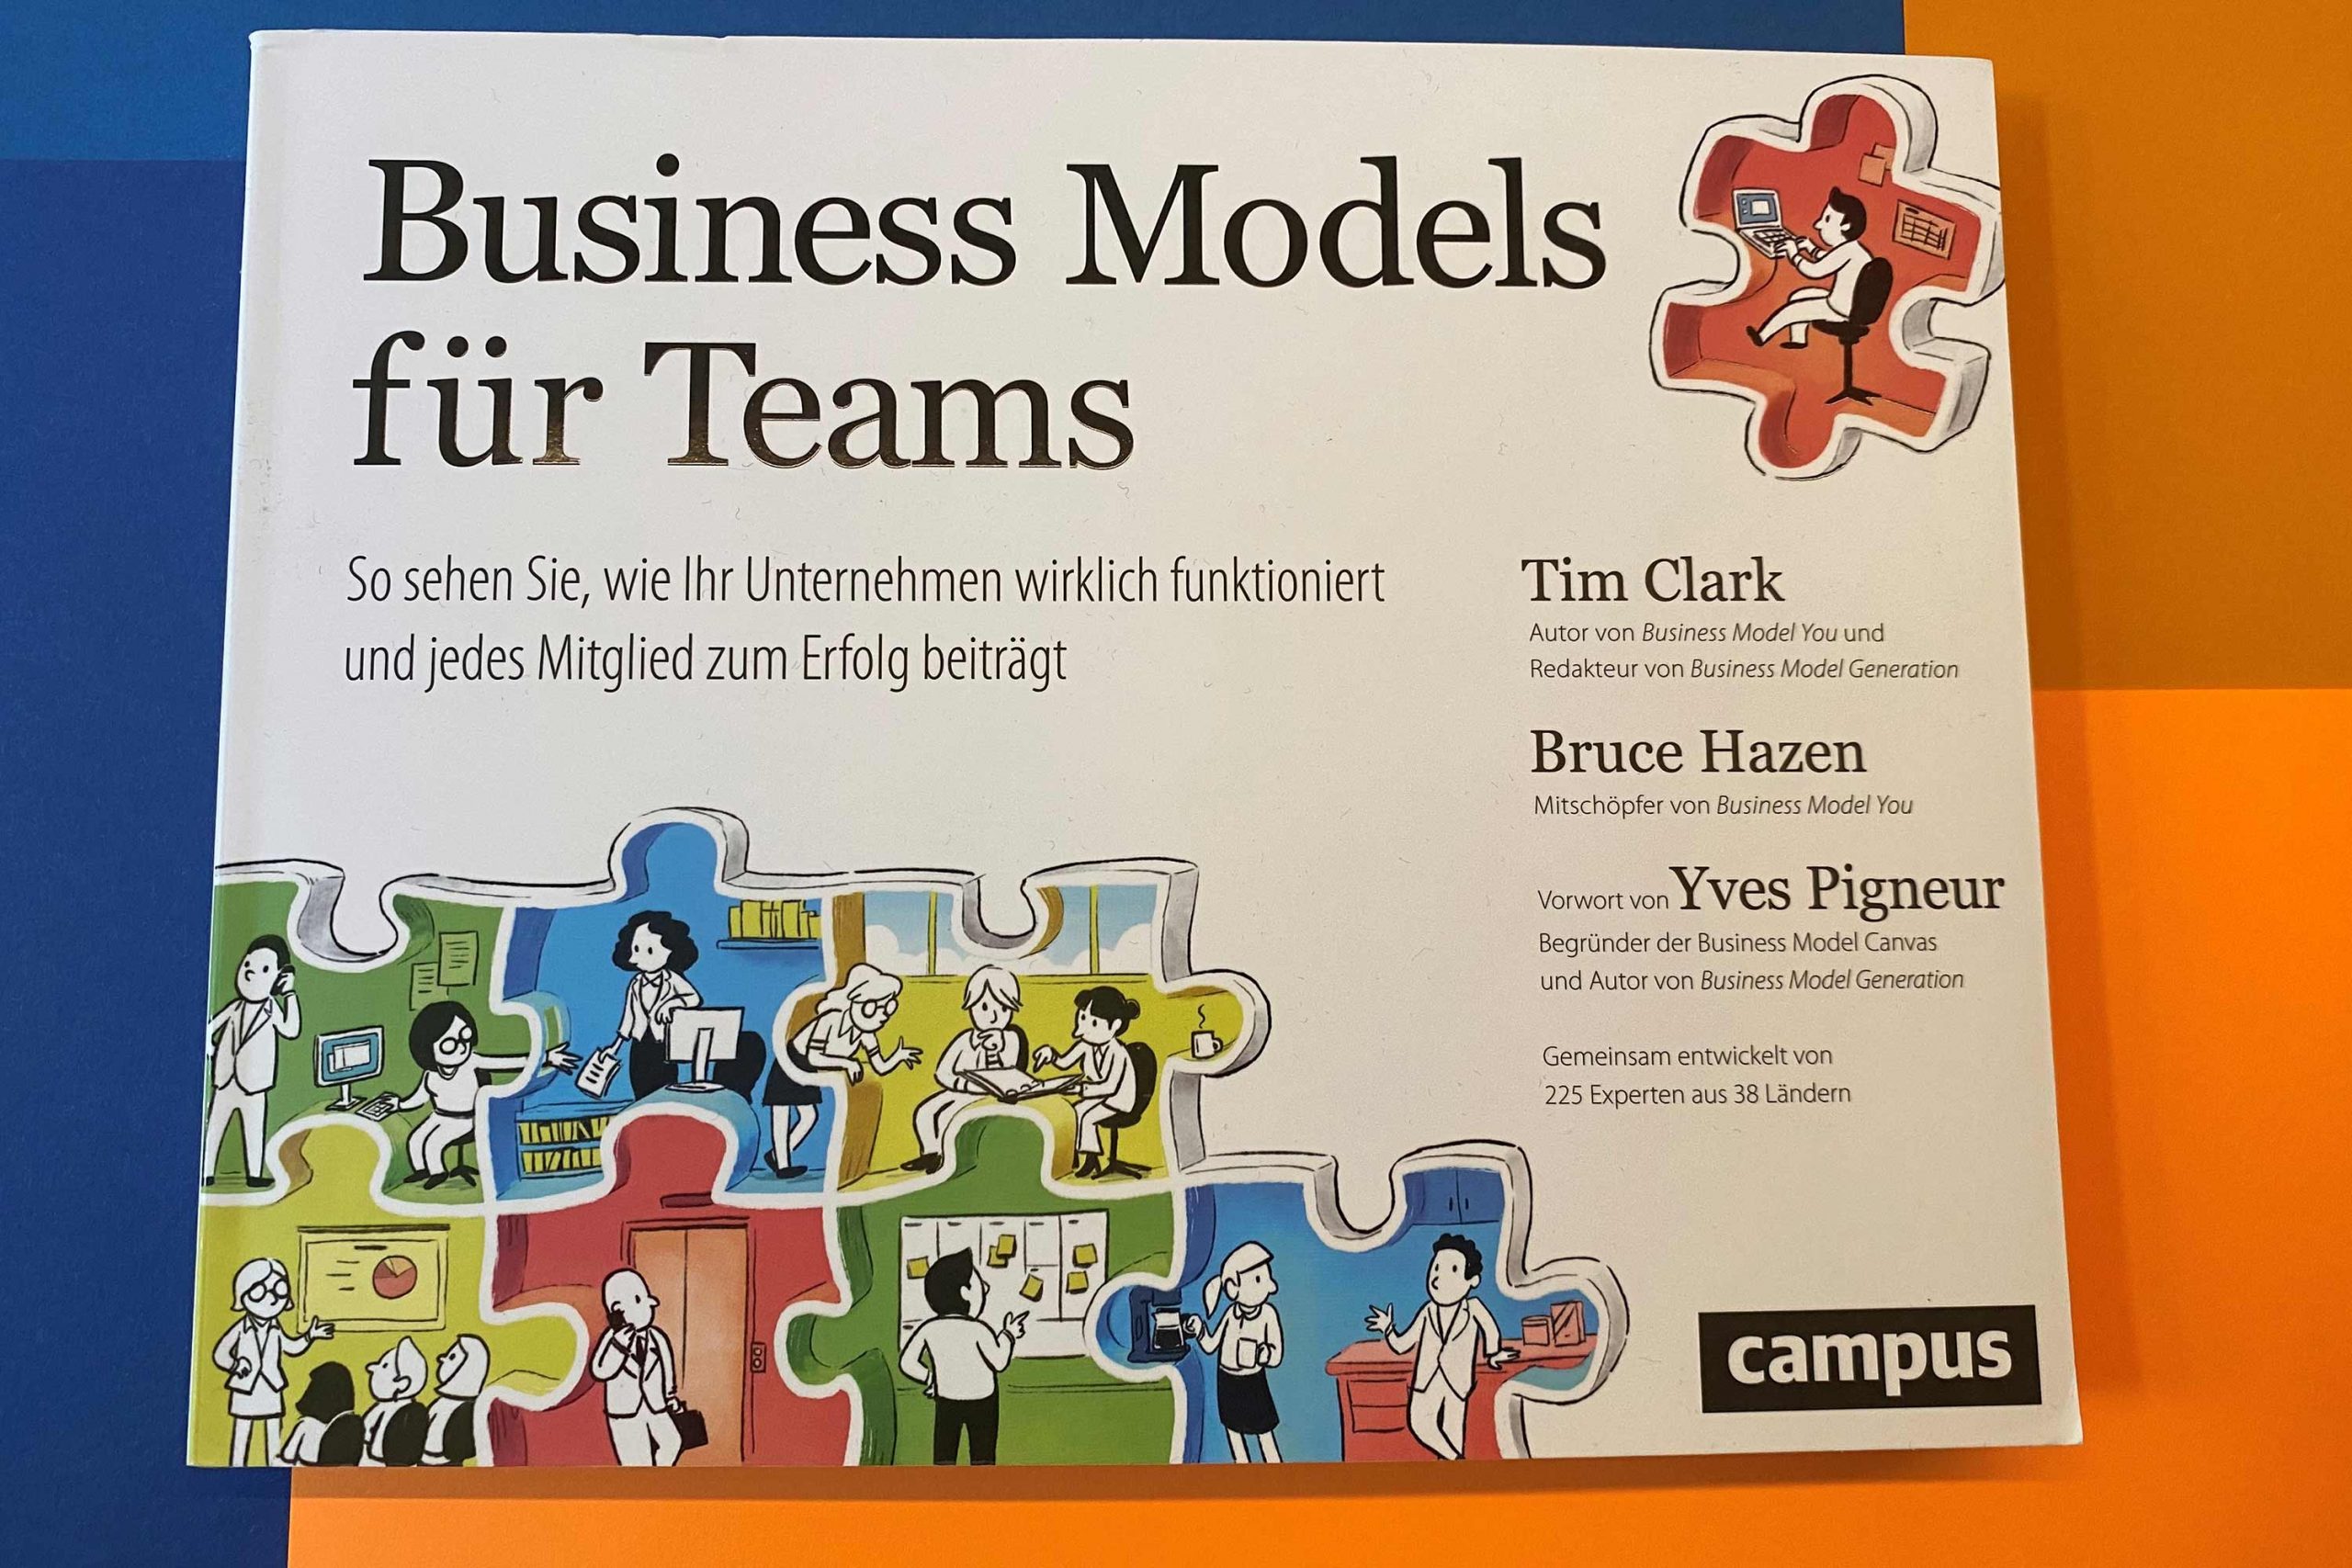 Business Models für Teams - Buch - Referenz - Innovation - REINVENTIS - Innovationsagentur - München